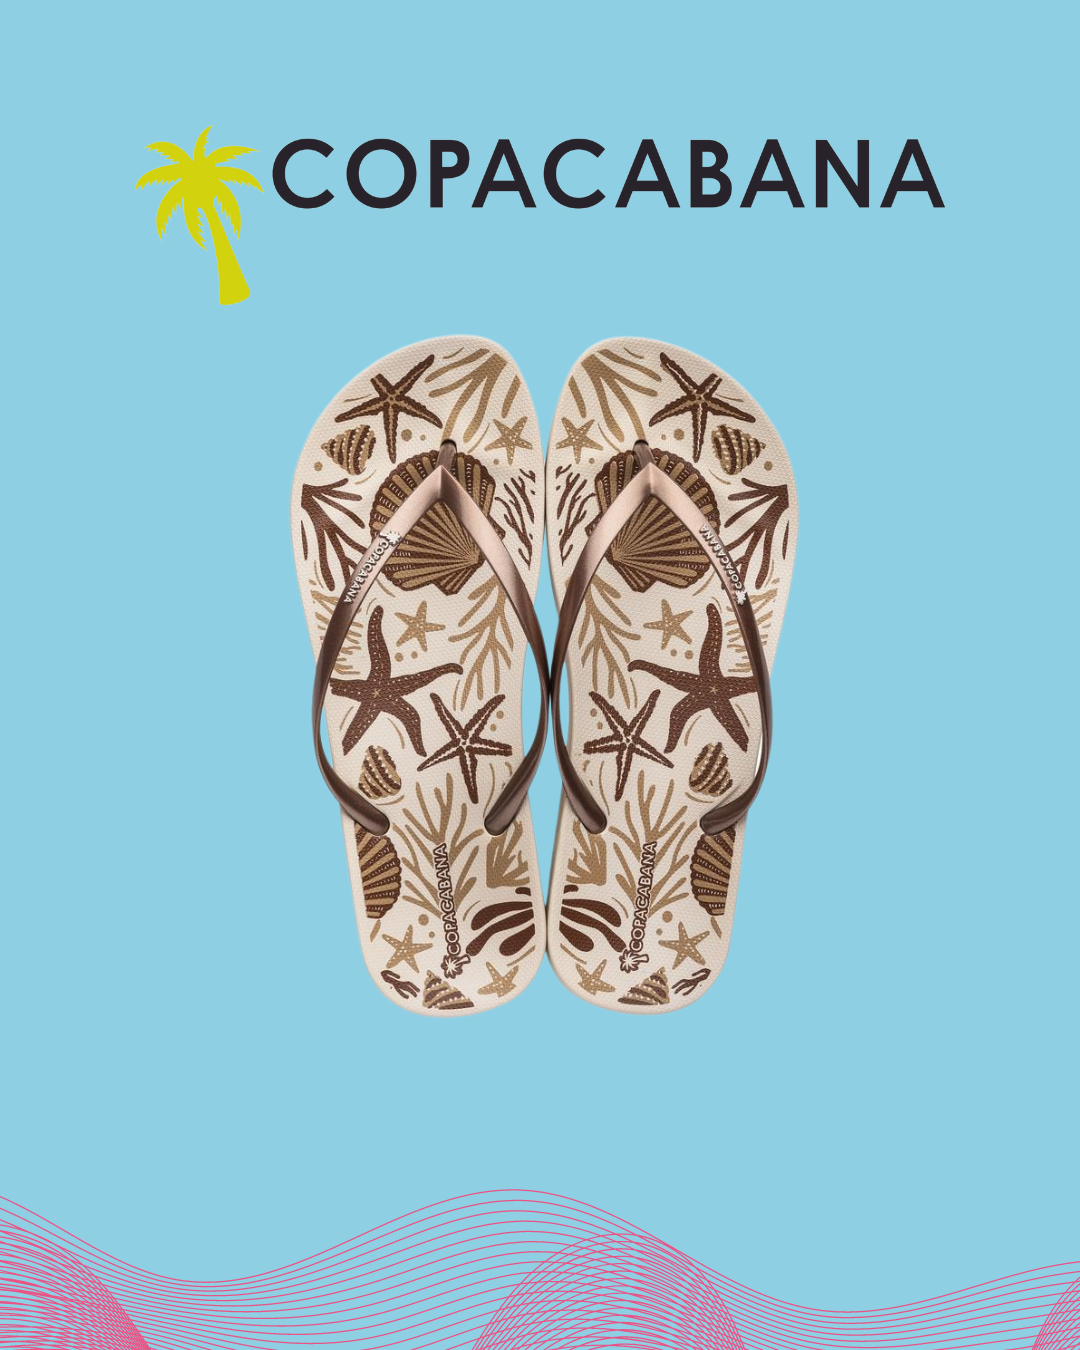 Copacabana - print